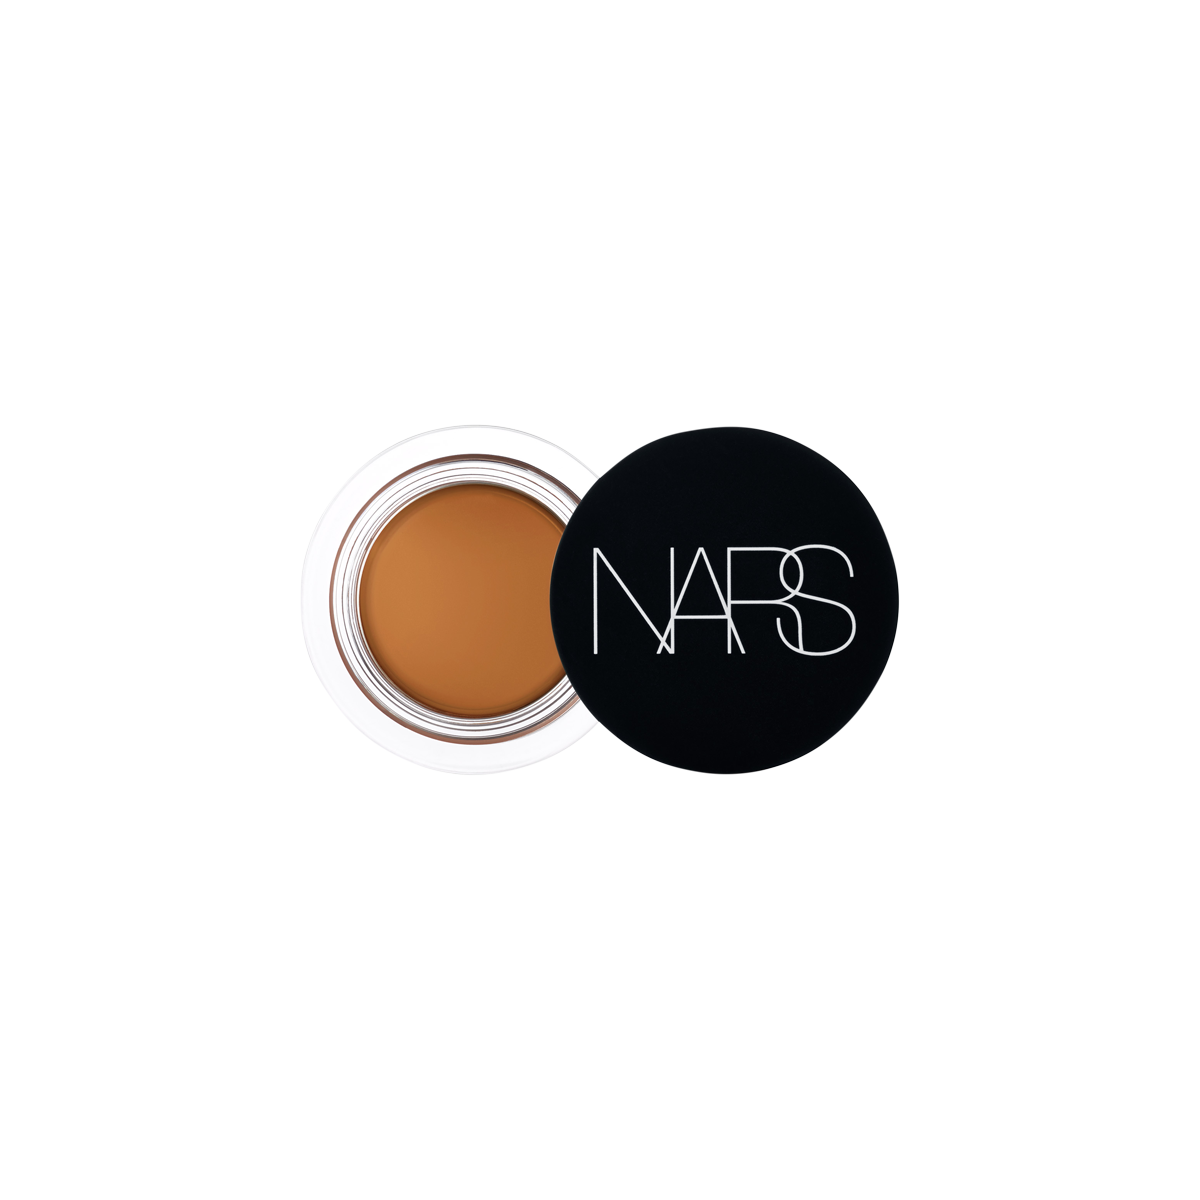 NARS - Soft Matte Concealer